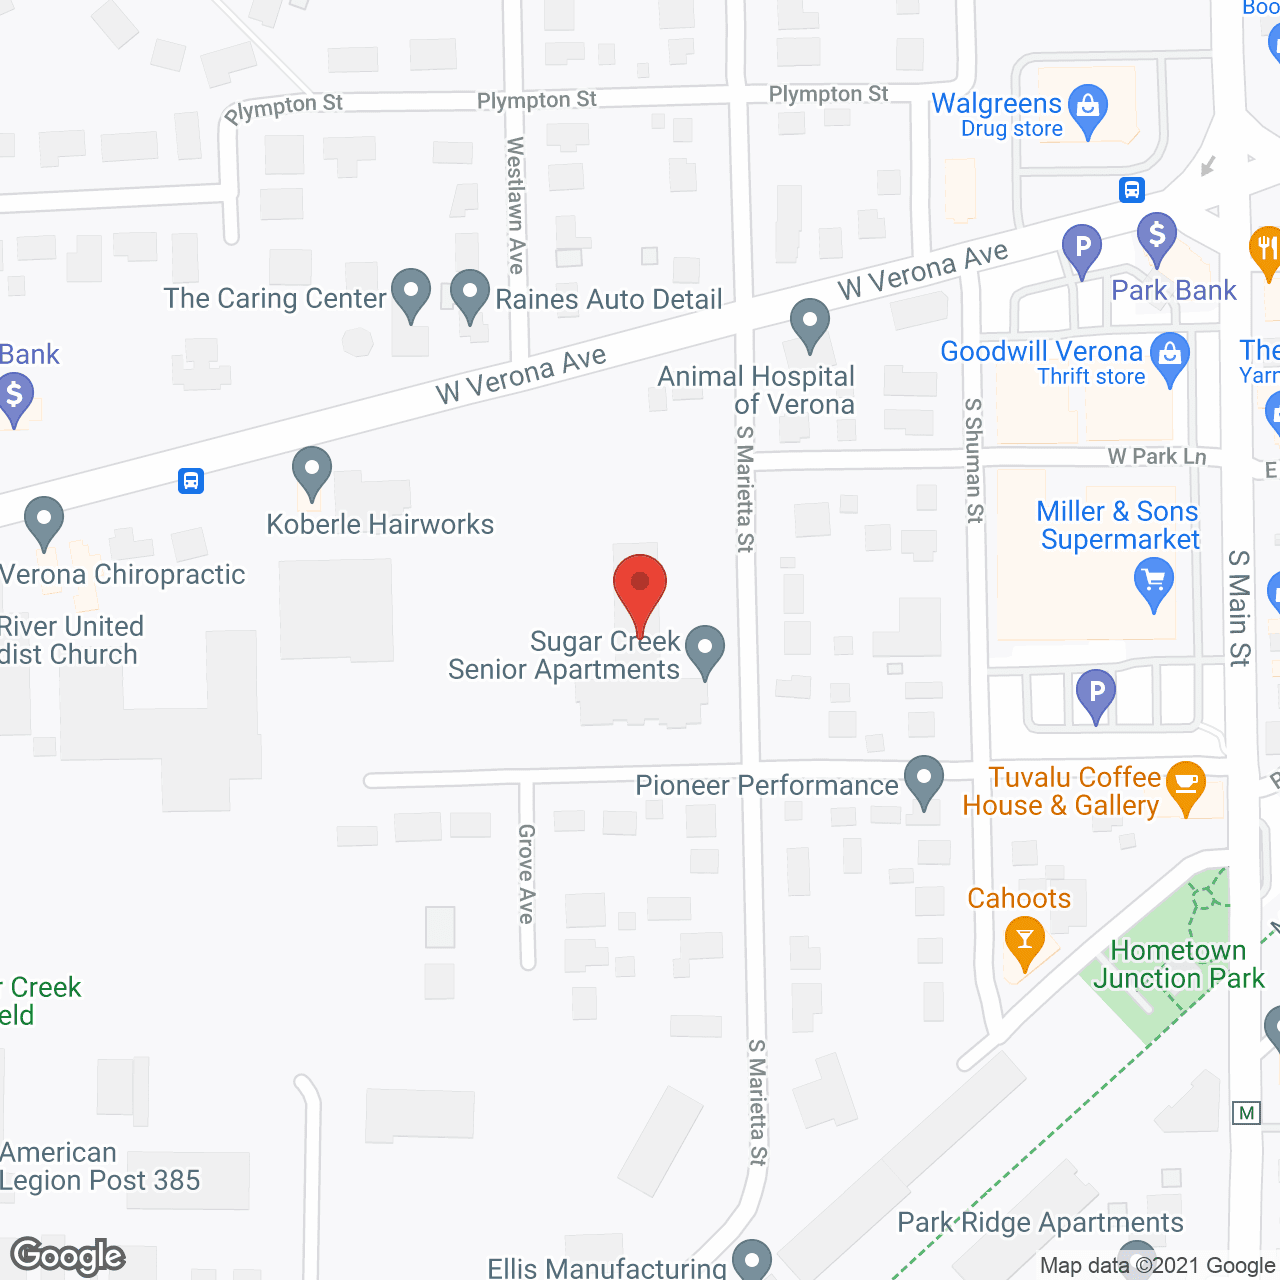 Sugar Creek Apartments in google map